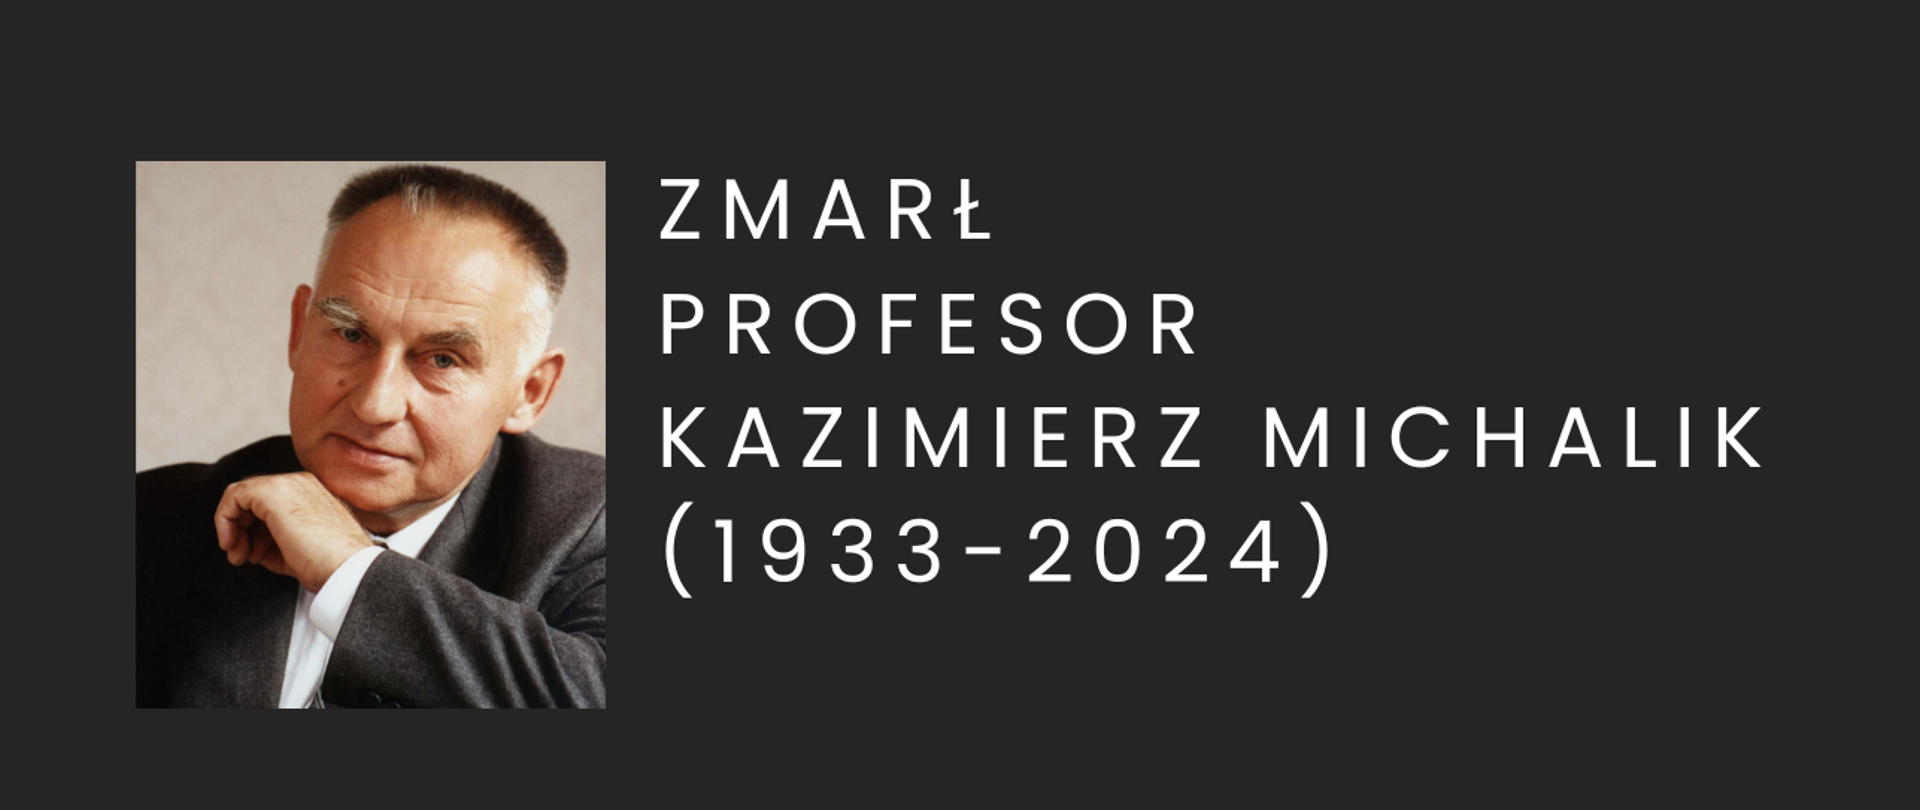 Baner żałobny prof. Kazimierz Michalik napis i zdjęcie na czarnym tle